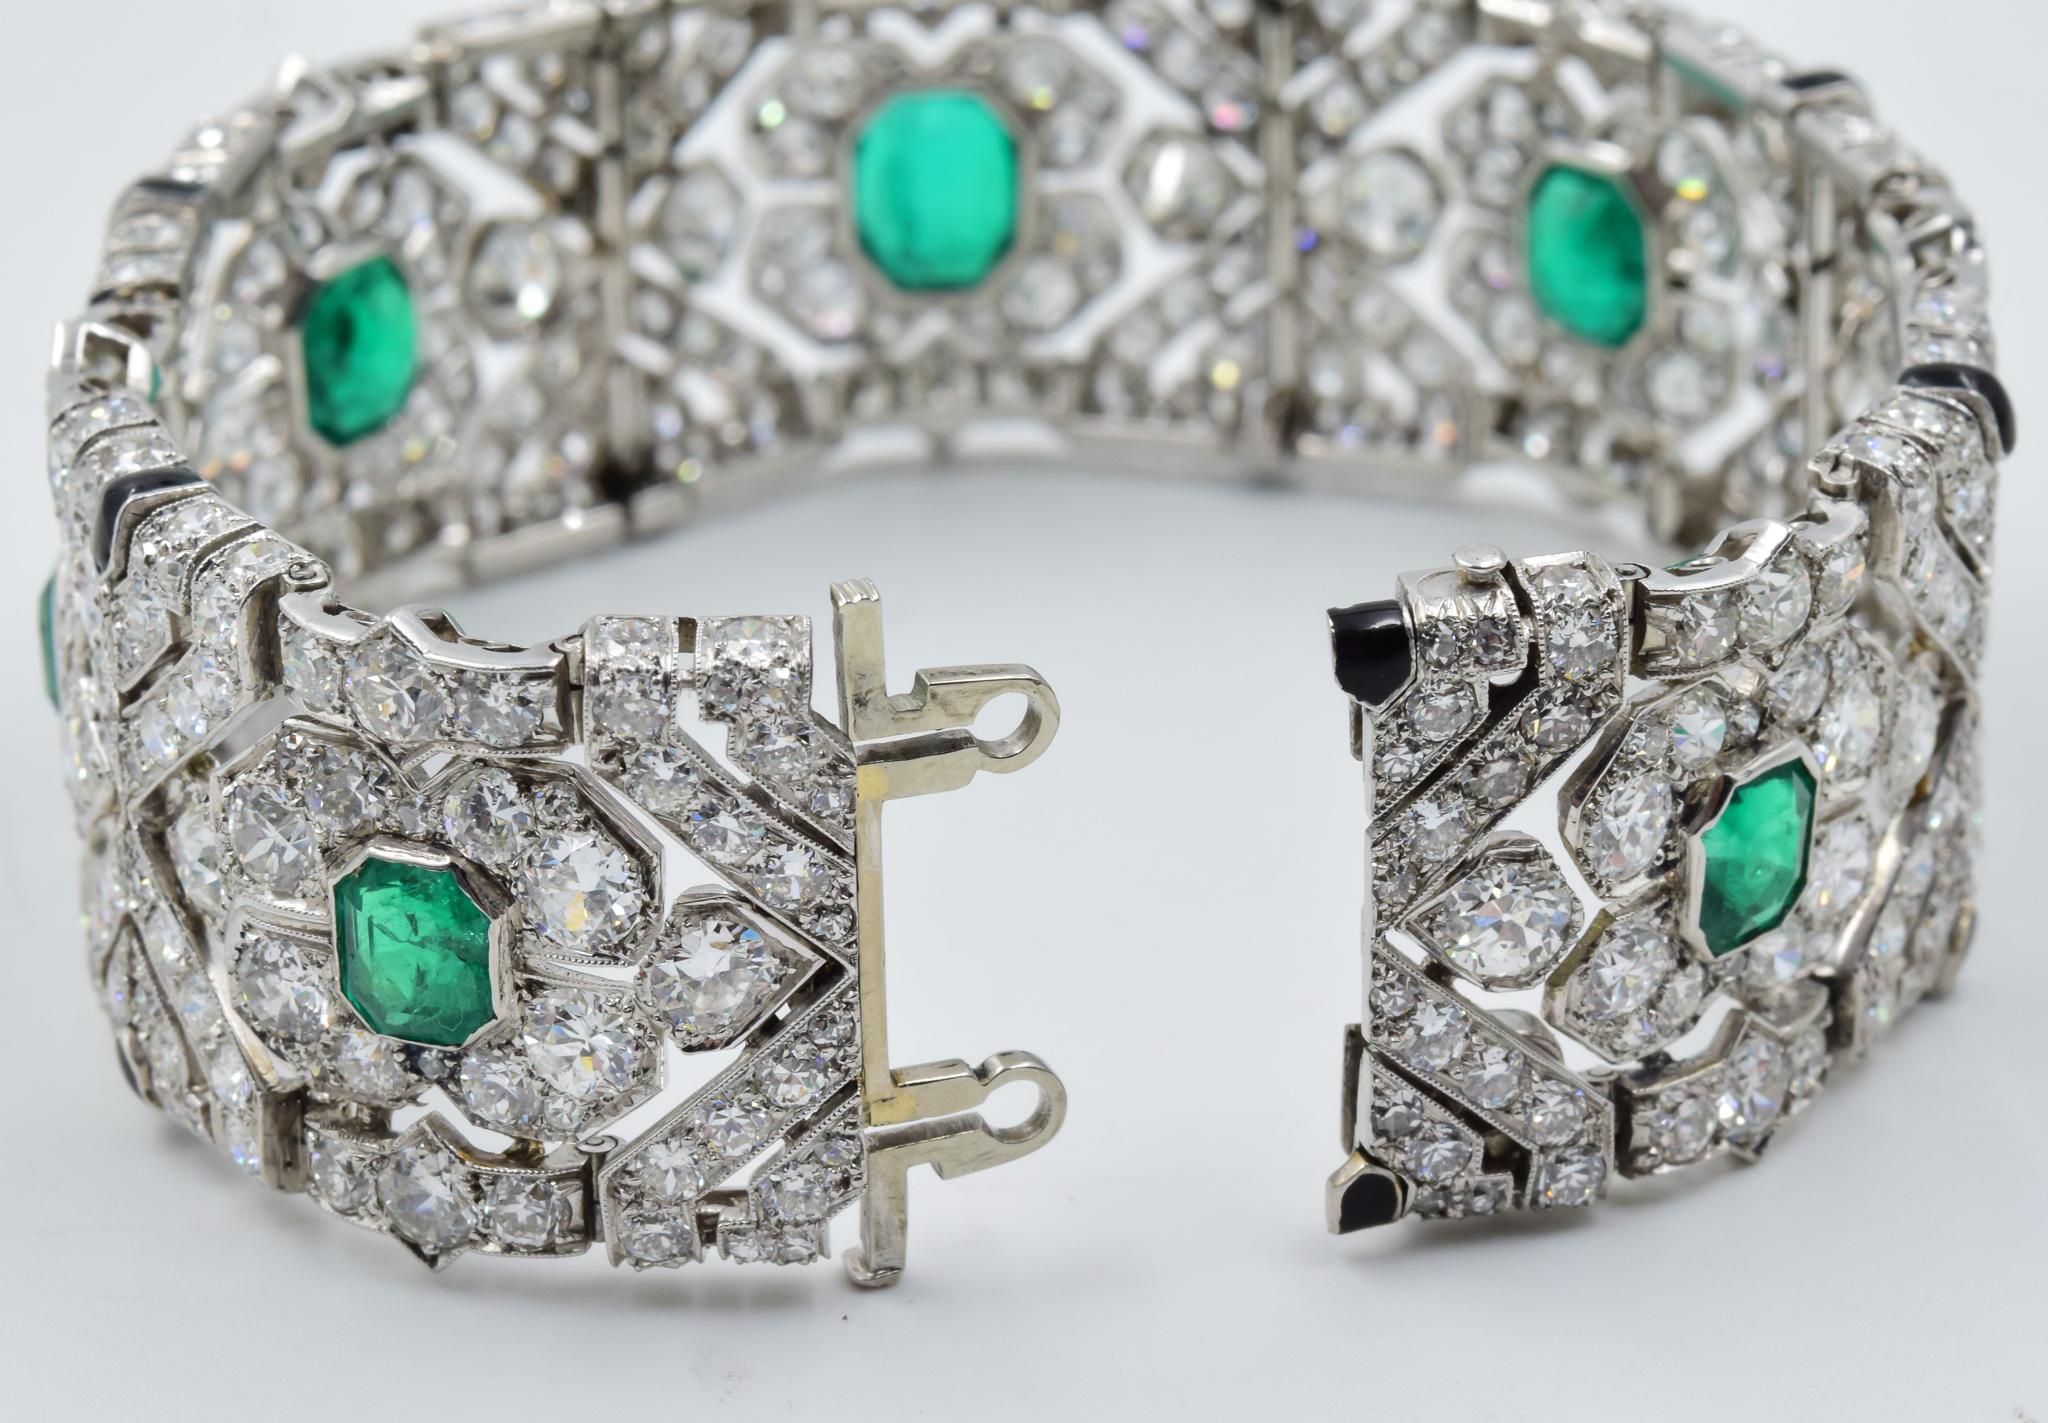 10 Carat Colombian Emerald Bracelet in Platinum AGL Certified 20 Carat 1920s Era 2